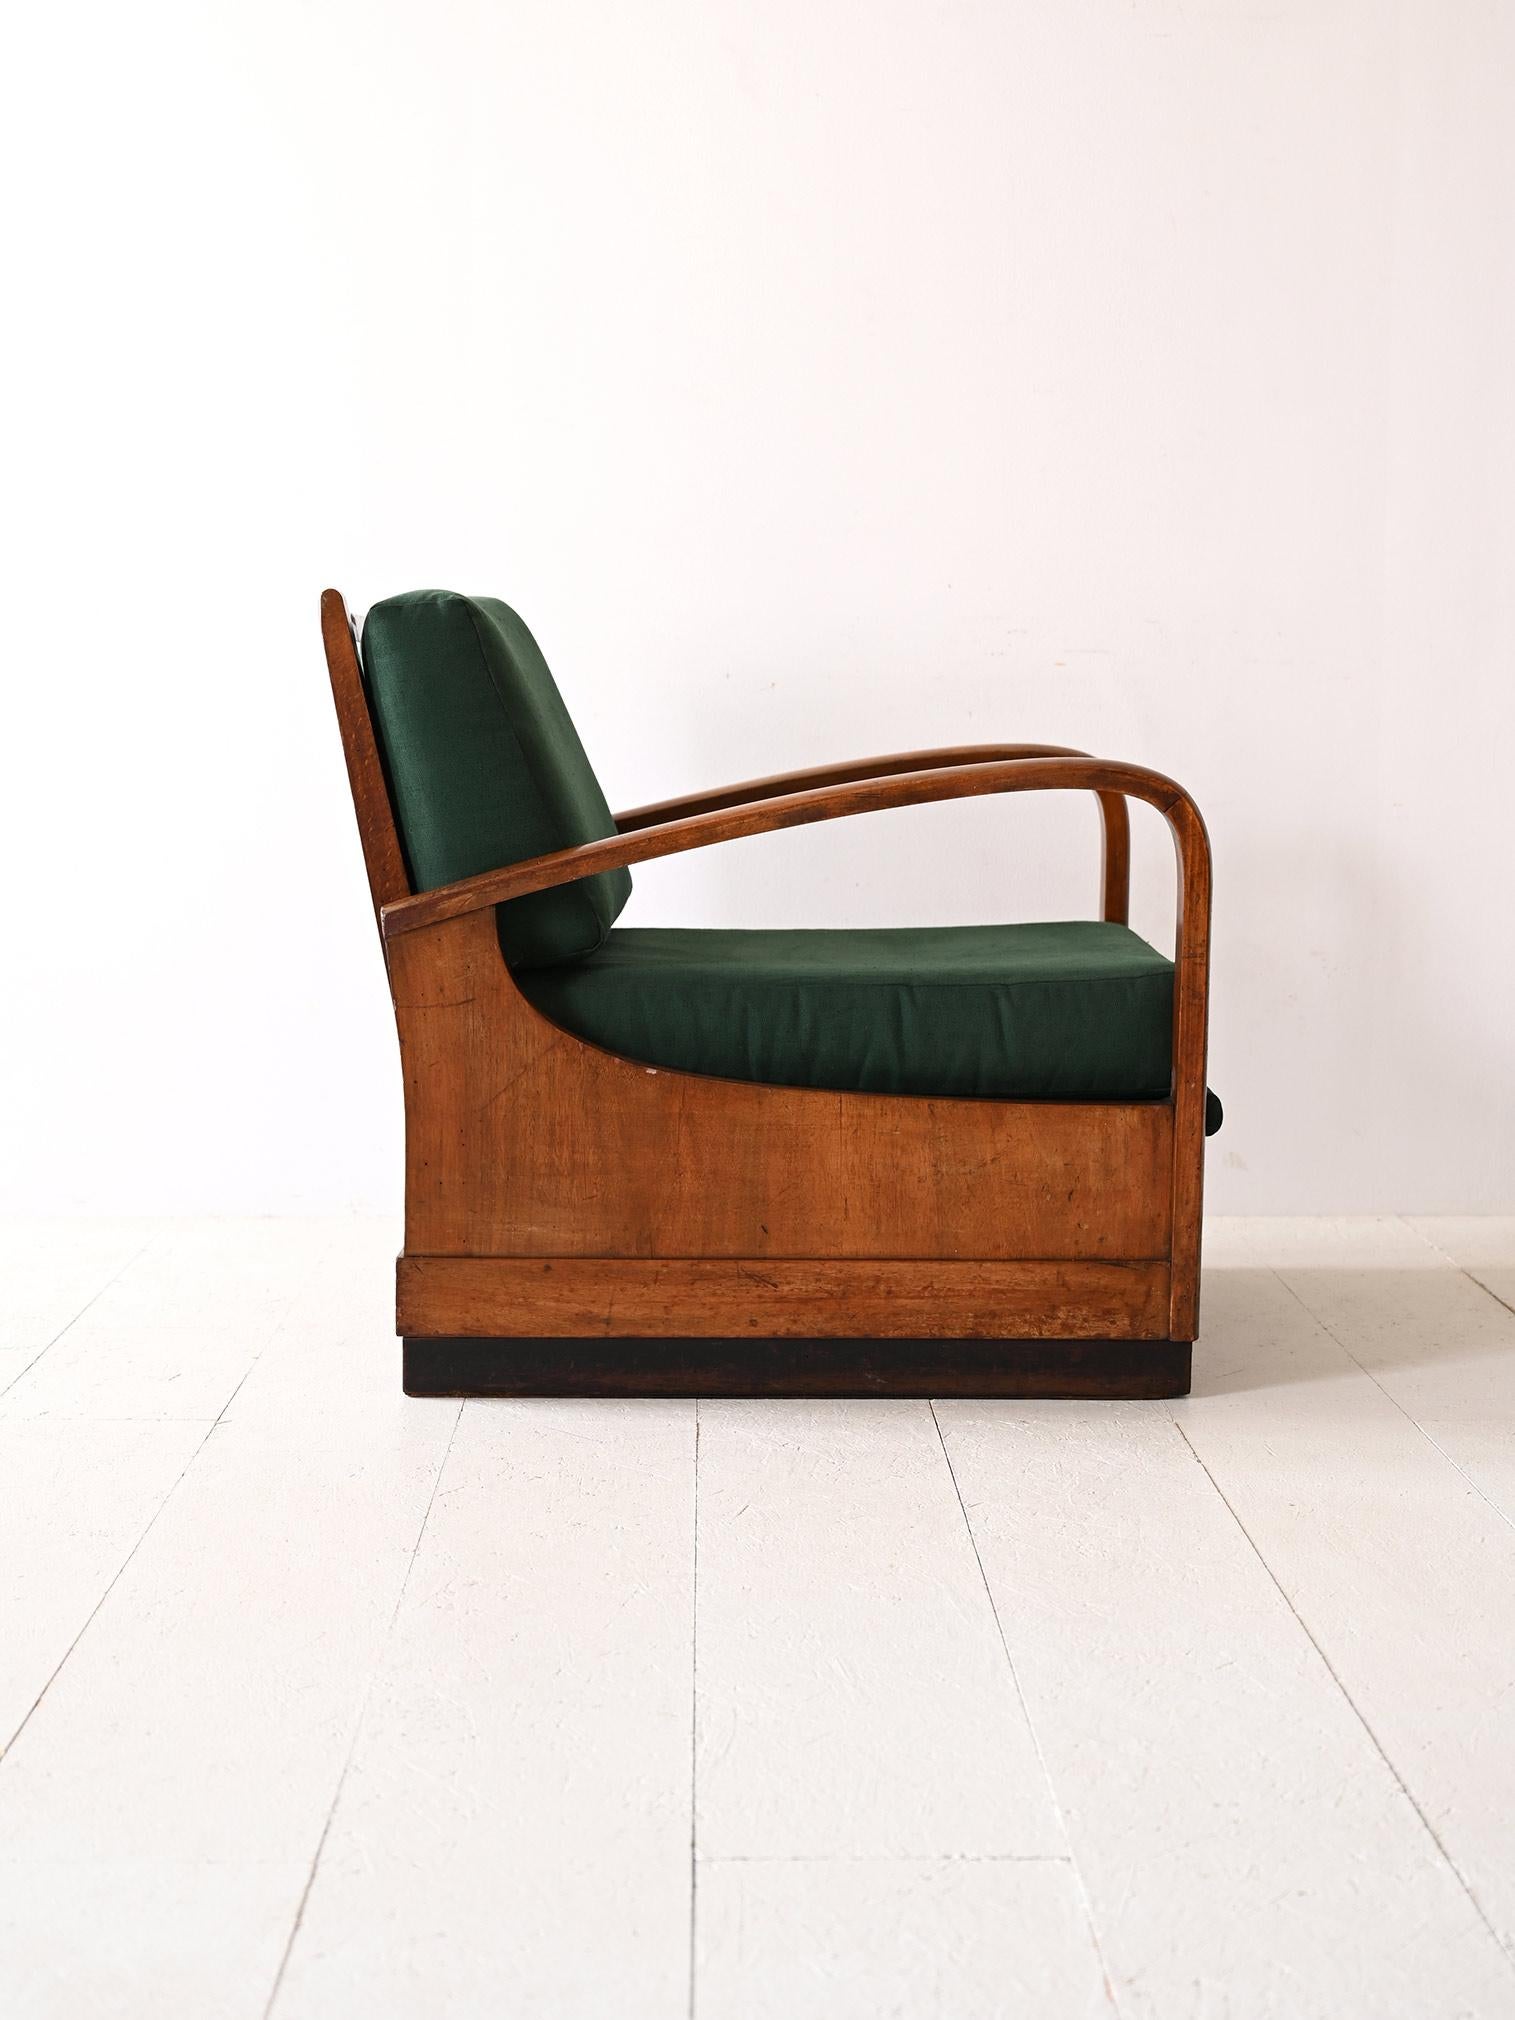 Le fauteuil Art déco des années 1940 incarne une double fonctionnalité : un siège confortable qui se transforme en lit. Le bois, avec ses lignes courbes et sa finition patinée, apporte une touche d'historicité, tandis que le bardage vert évoque le